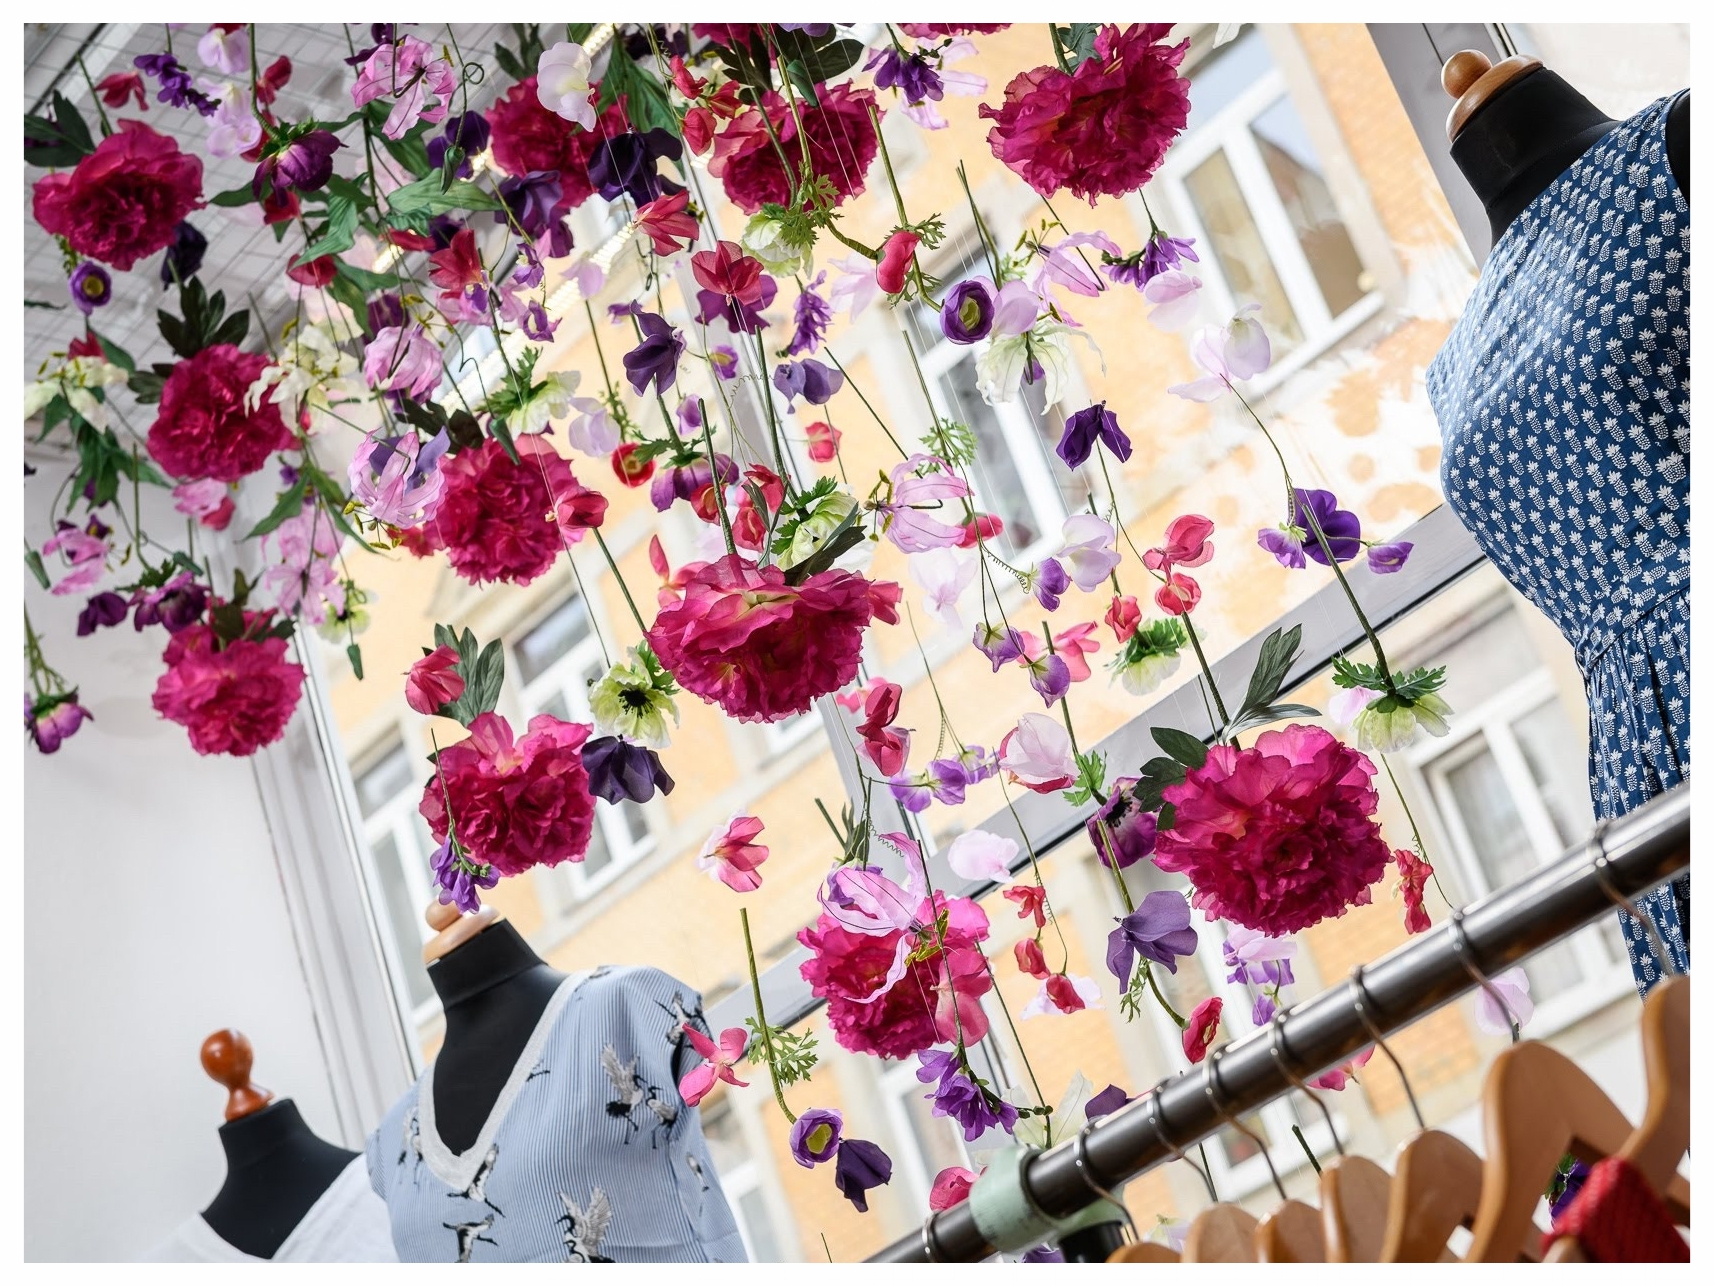 Schaufensterdekoration Dresden Lindegruen Blumen